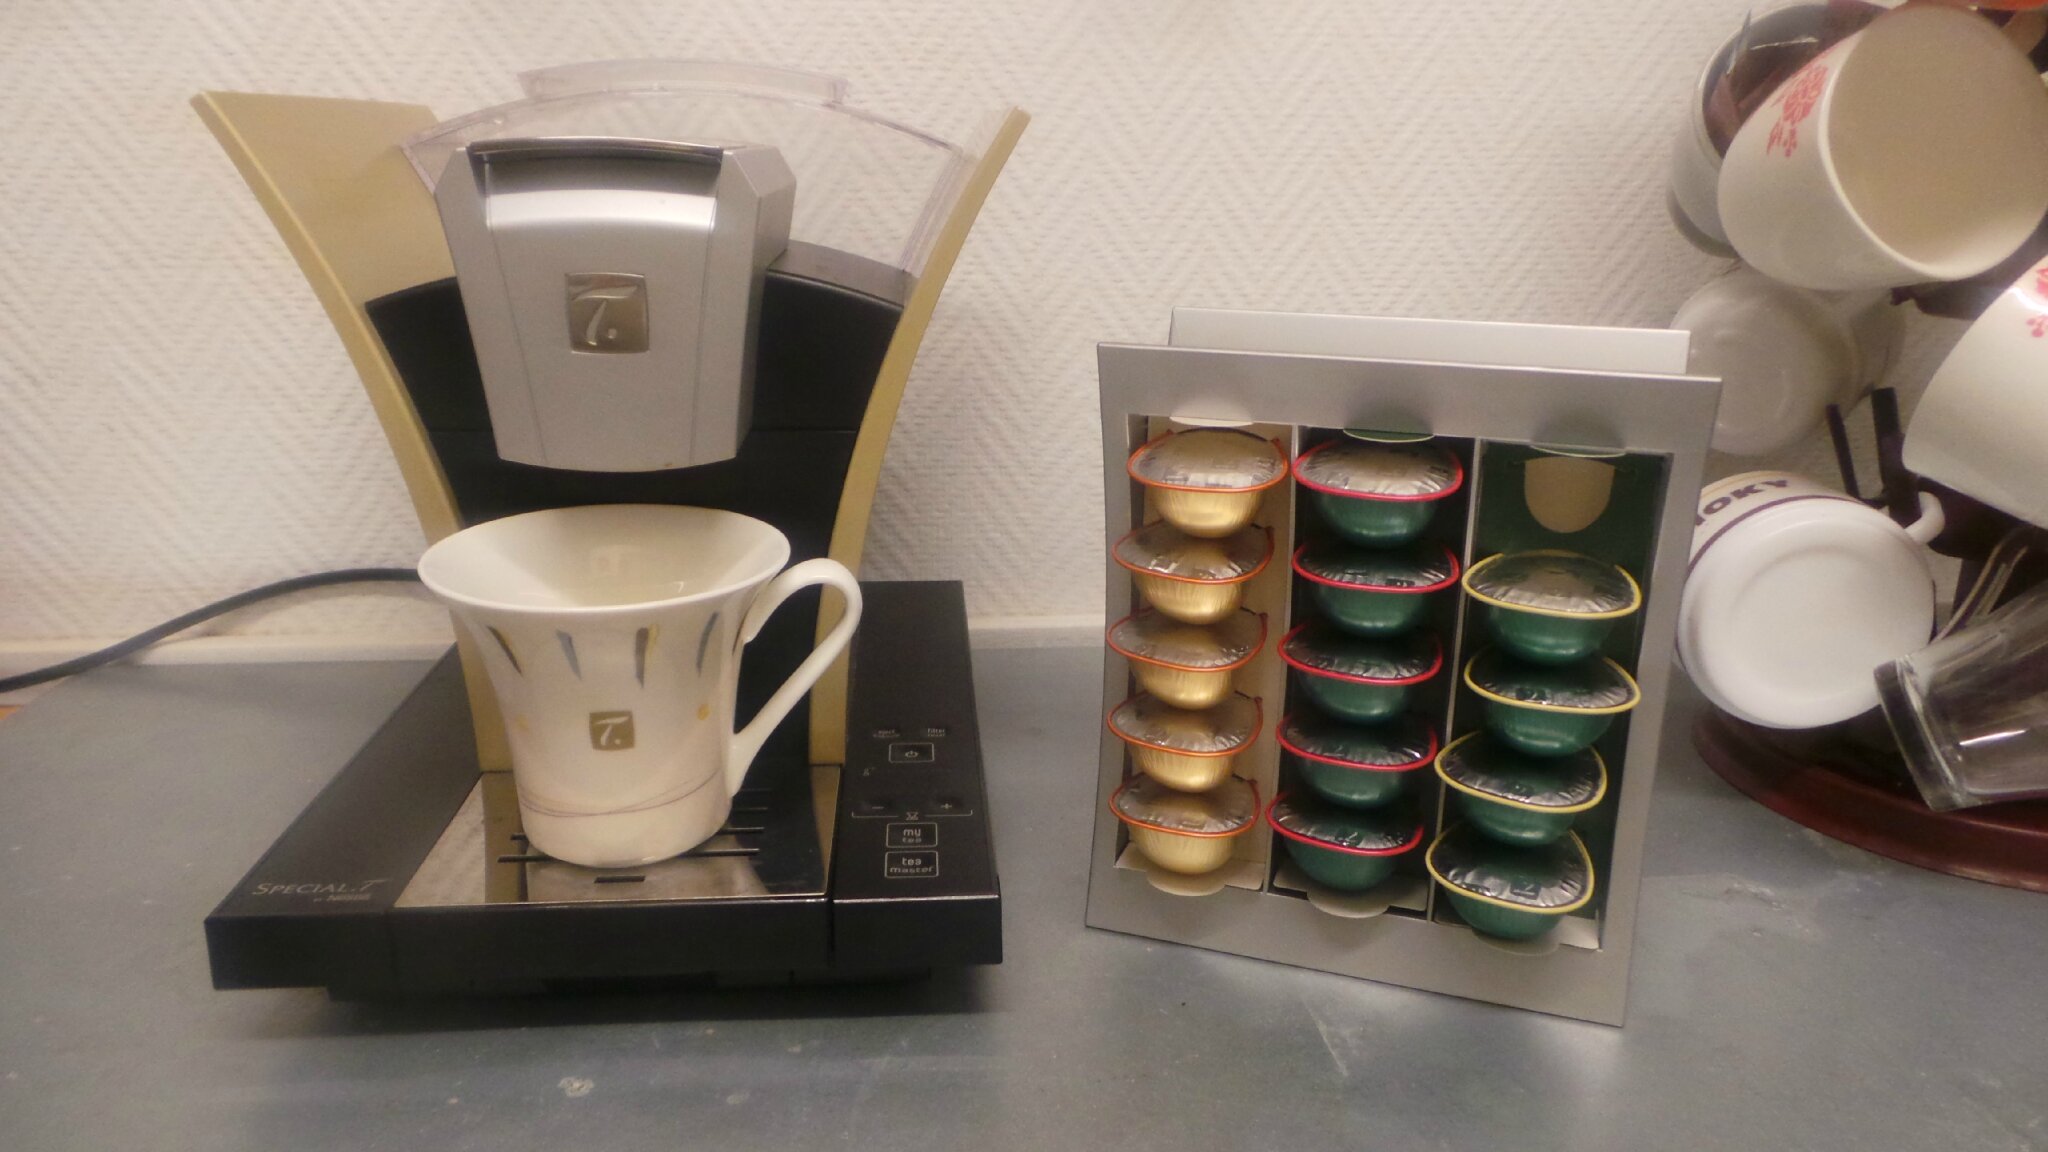 Test de la Special T Nestlé Machine à thé à capsule - Tests de produits par  BrugliaTests de produits par Bruglia